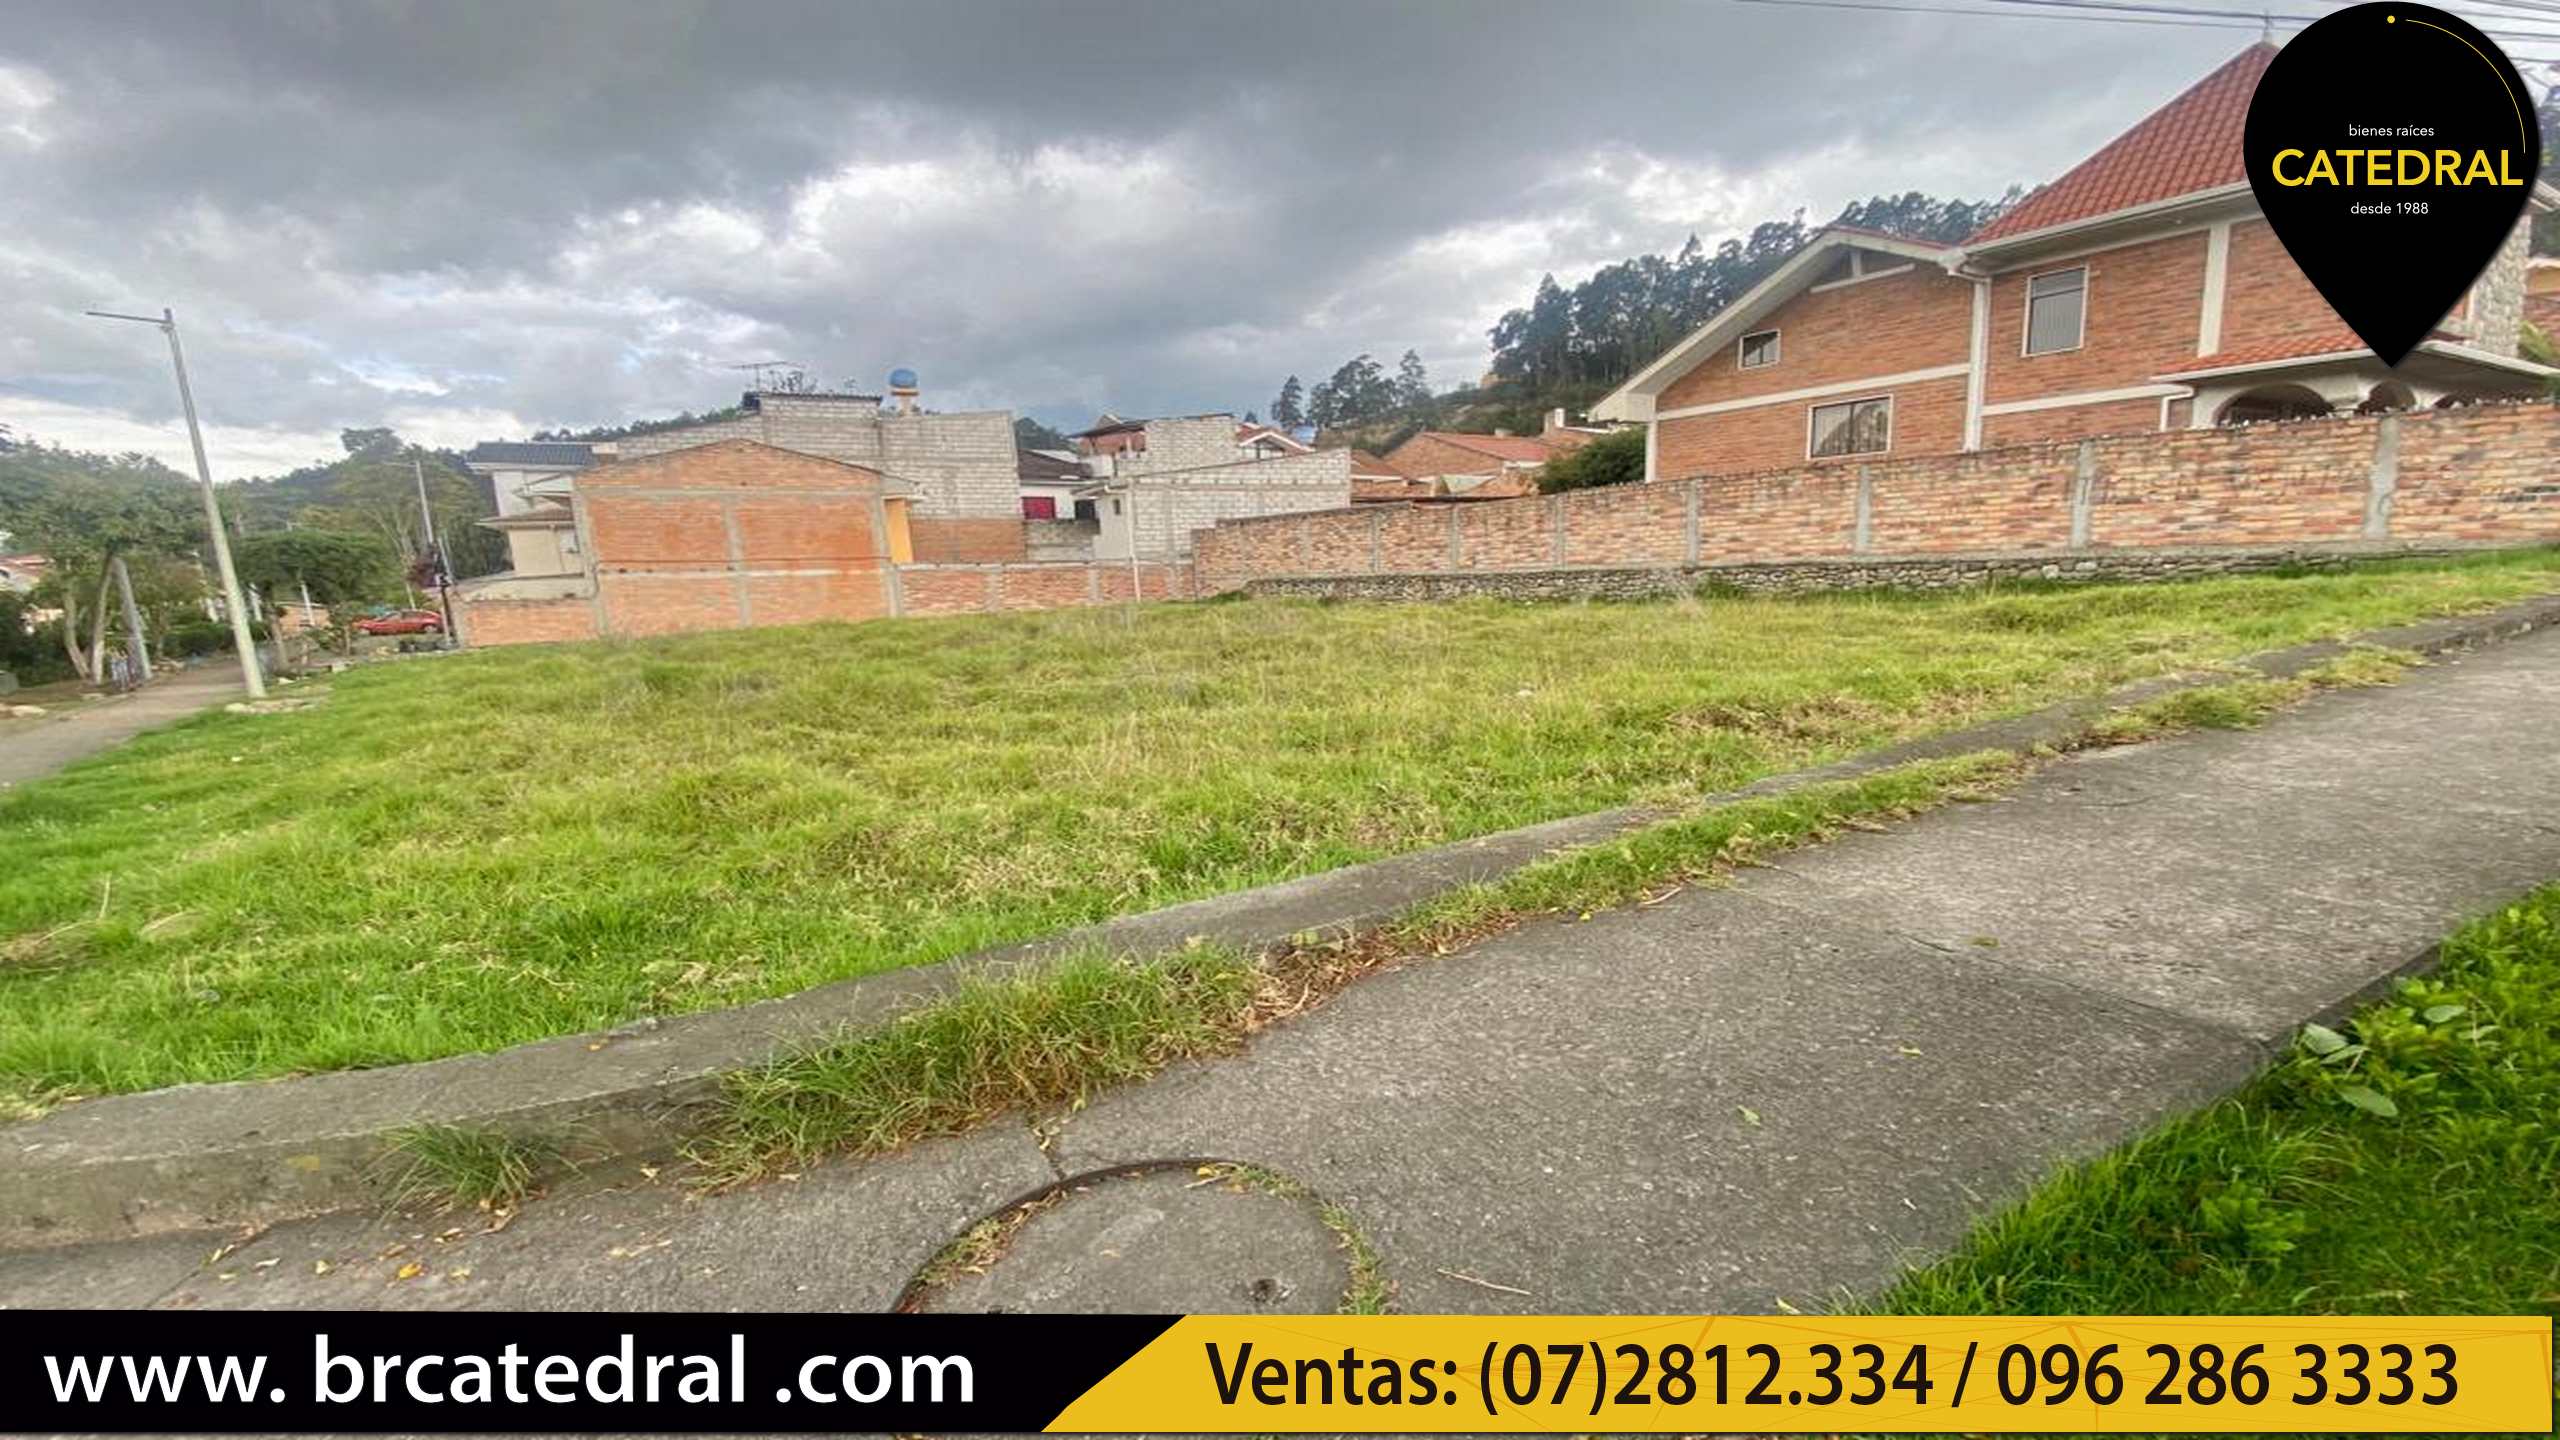 Sitio Solar Terreno de Venta en Cuenca Ecuador sector Gapal